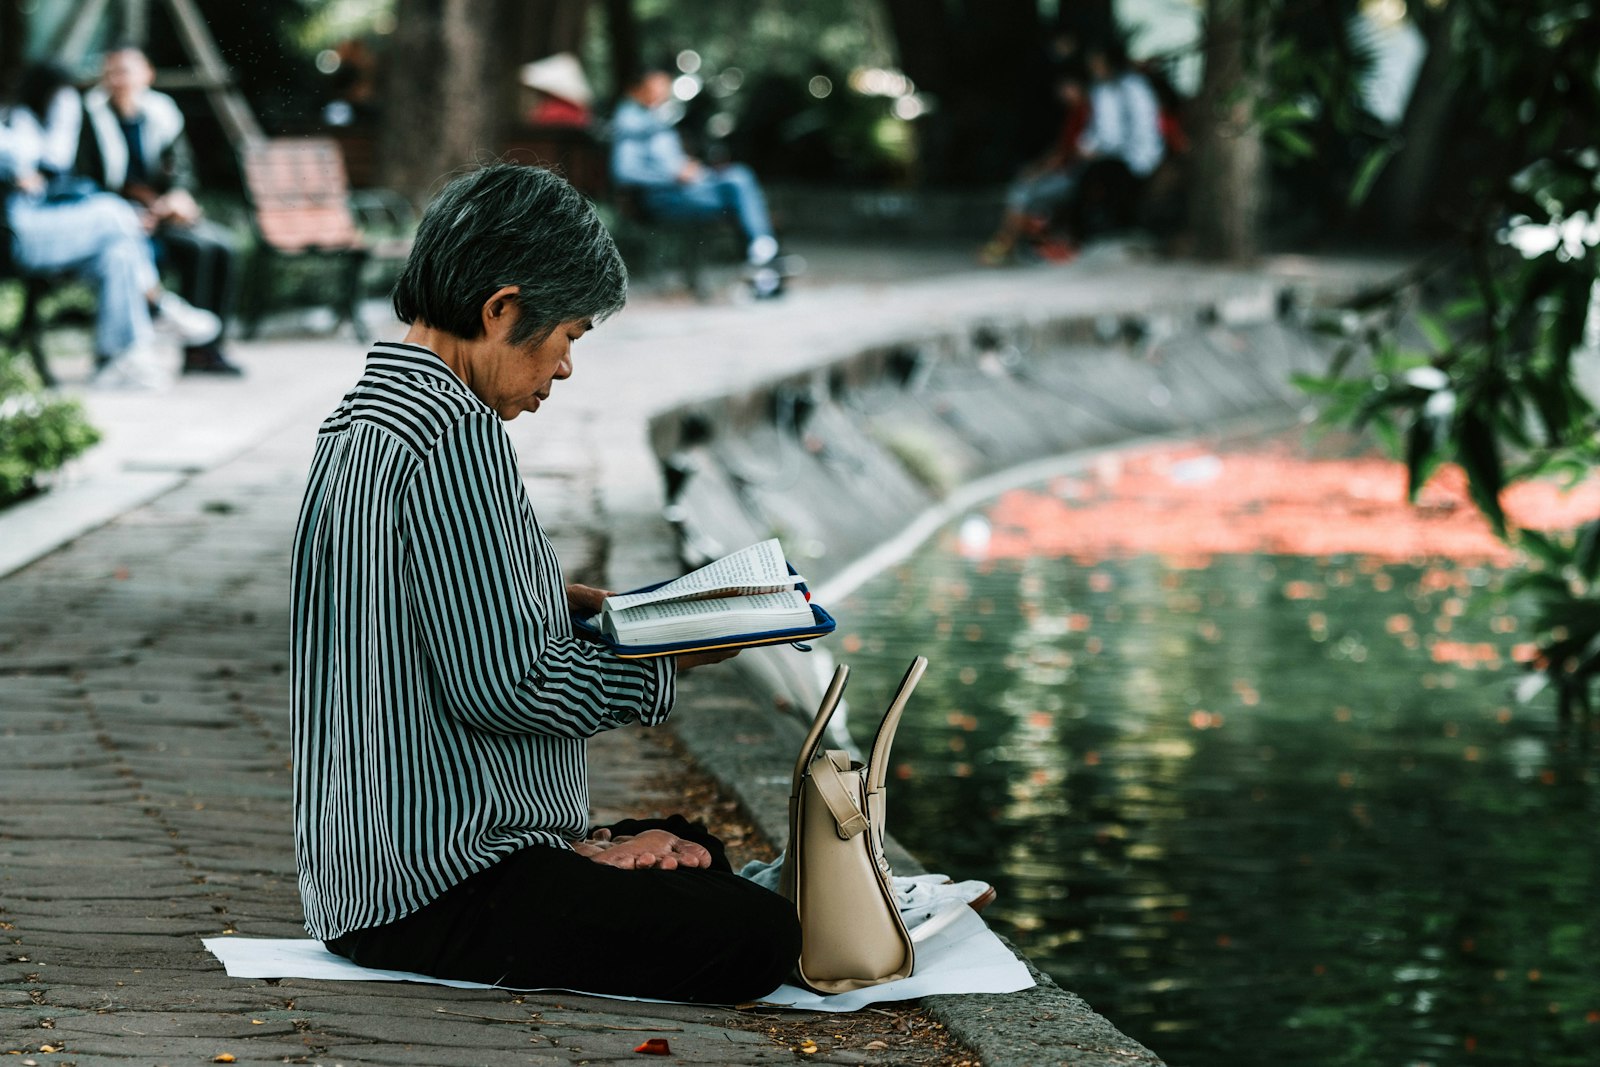 Canon EOS 70D sample photo. Woman reading book near photography